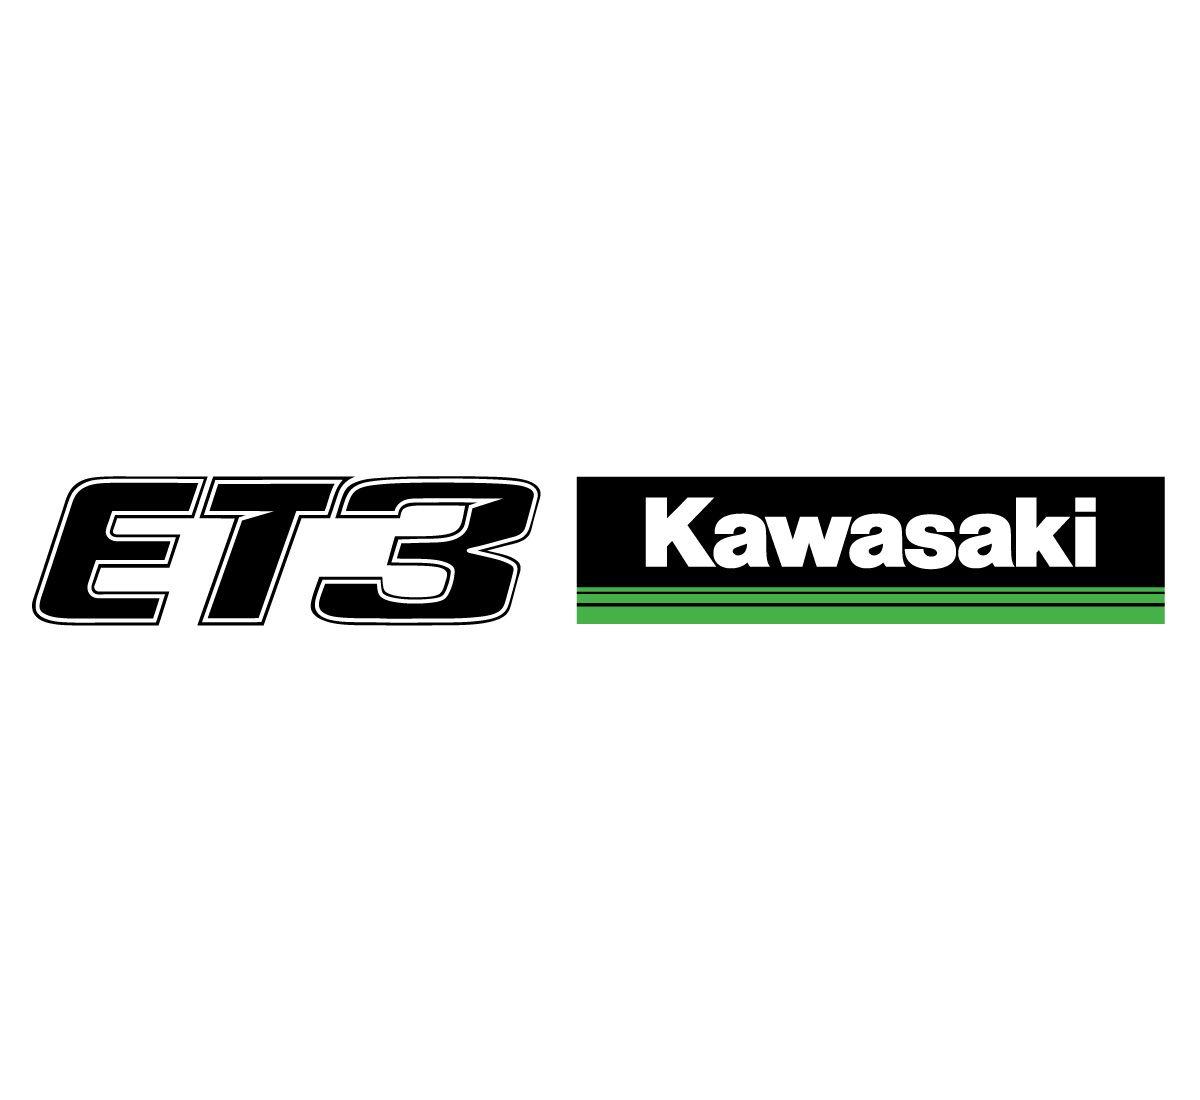 Green Kawasaki Logo - ET3 and Kawasaki 3 Green Lines Side By Side Logos, 12